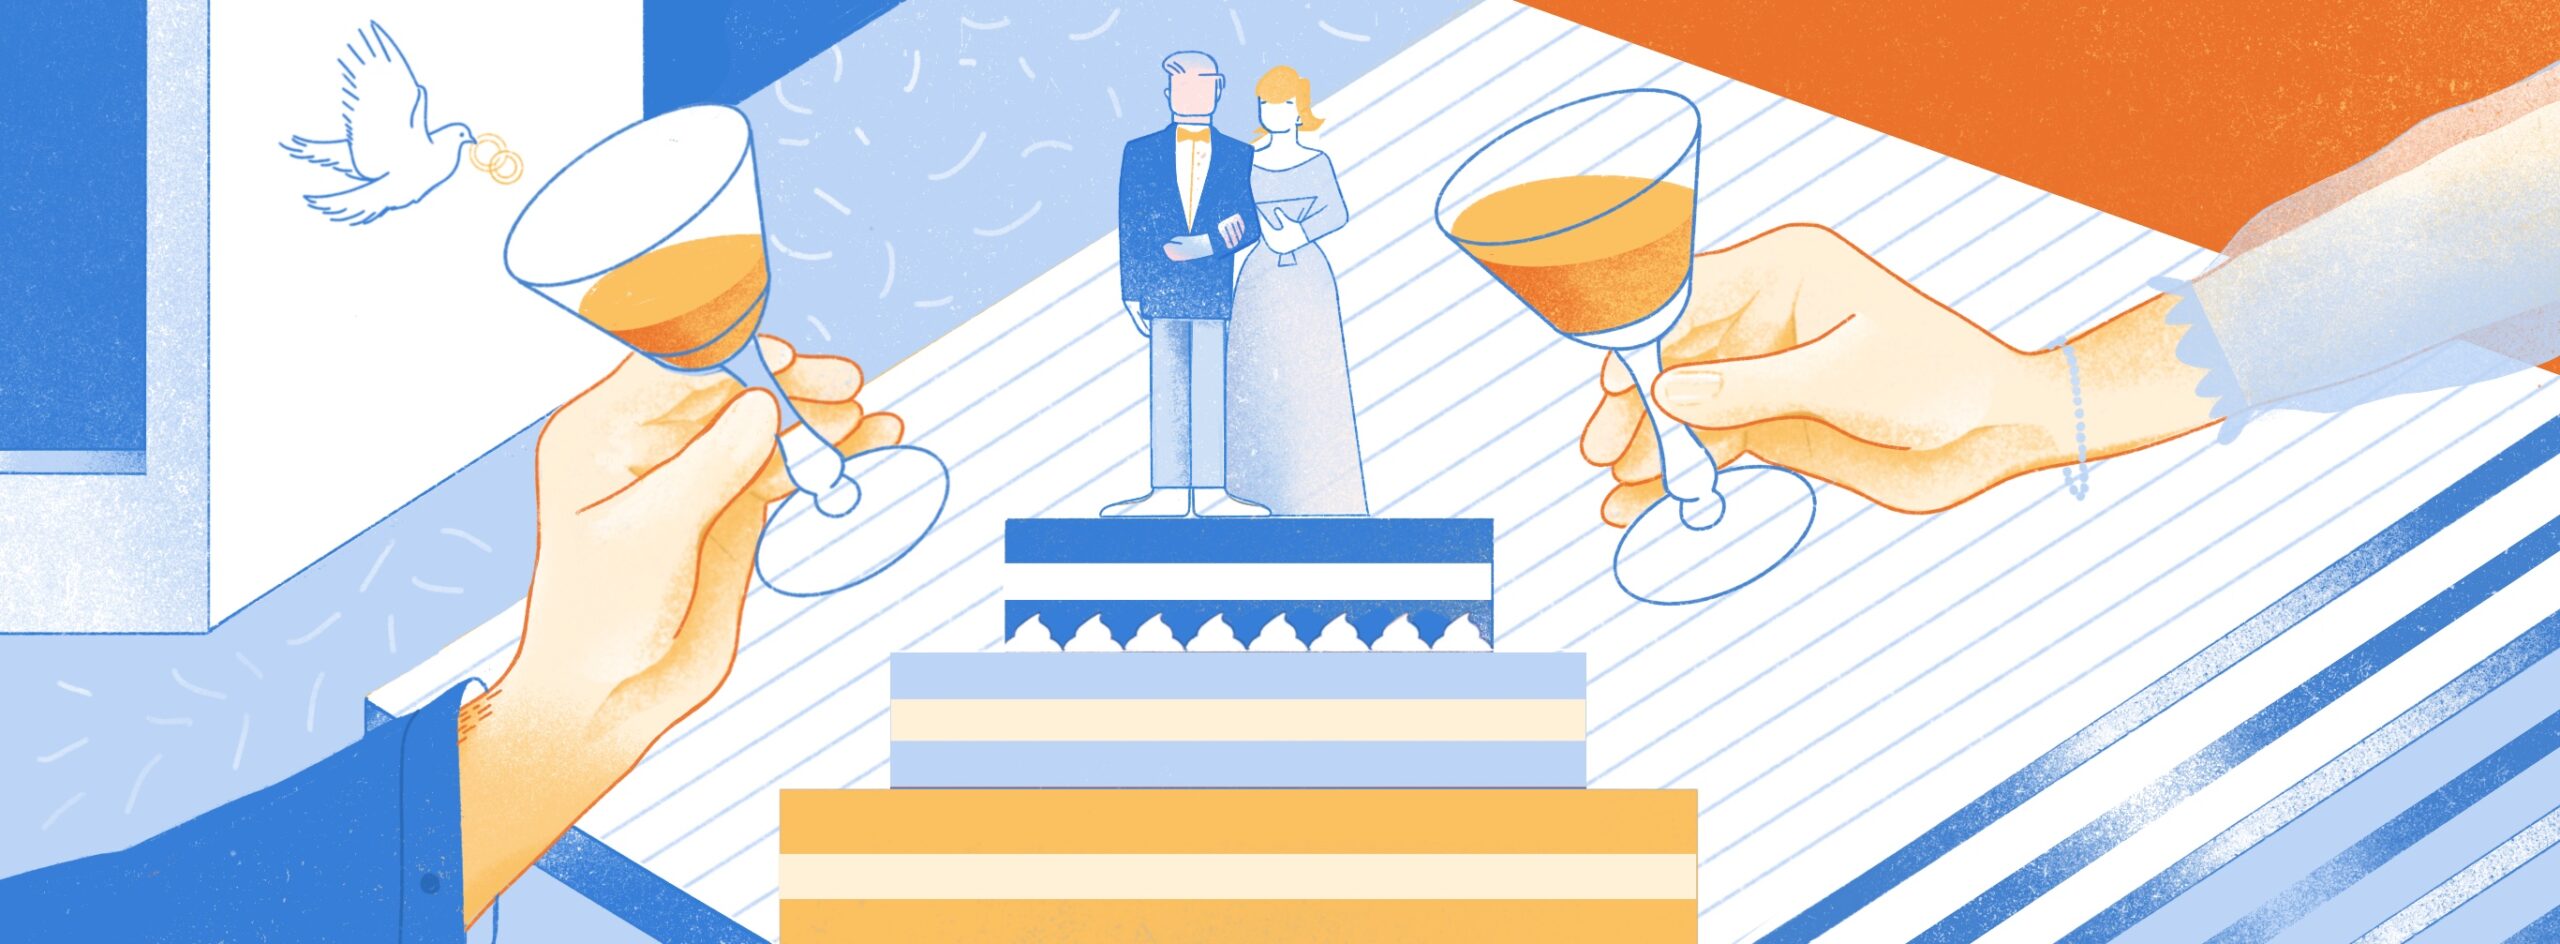 Полноразмерная обложка поста на тему: Как мы устроили свадьбу мечты